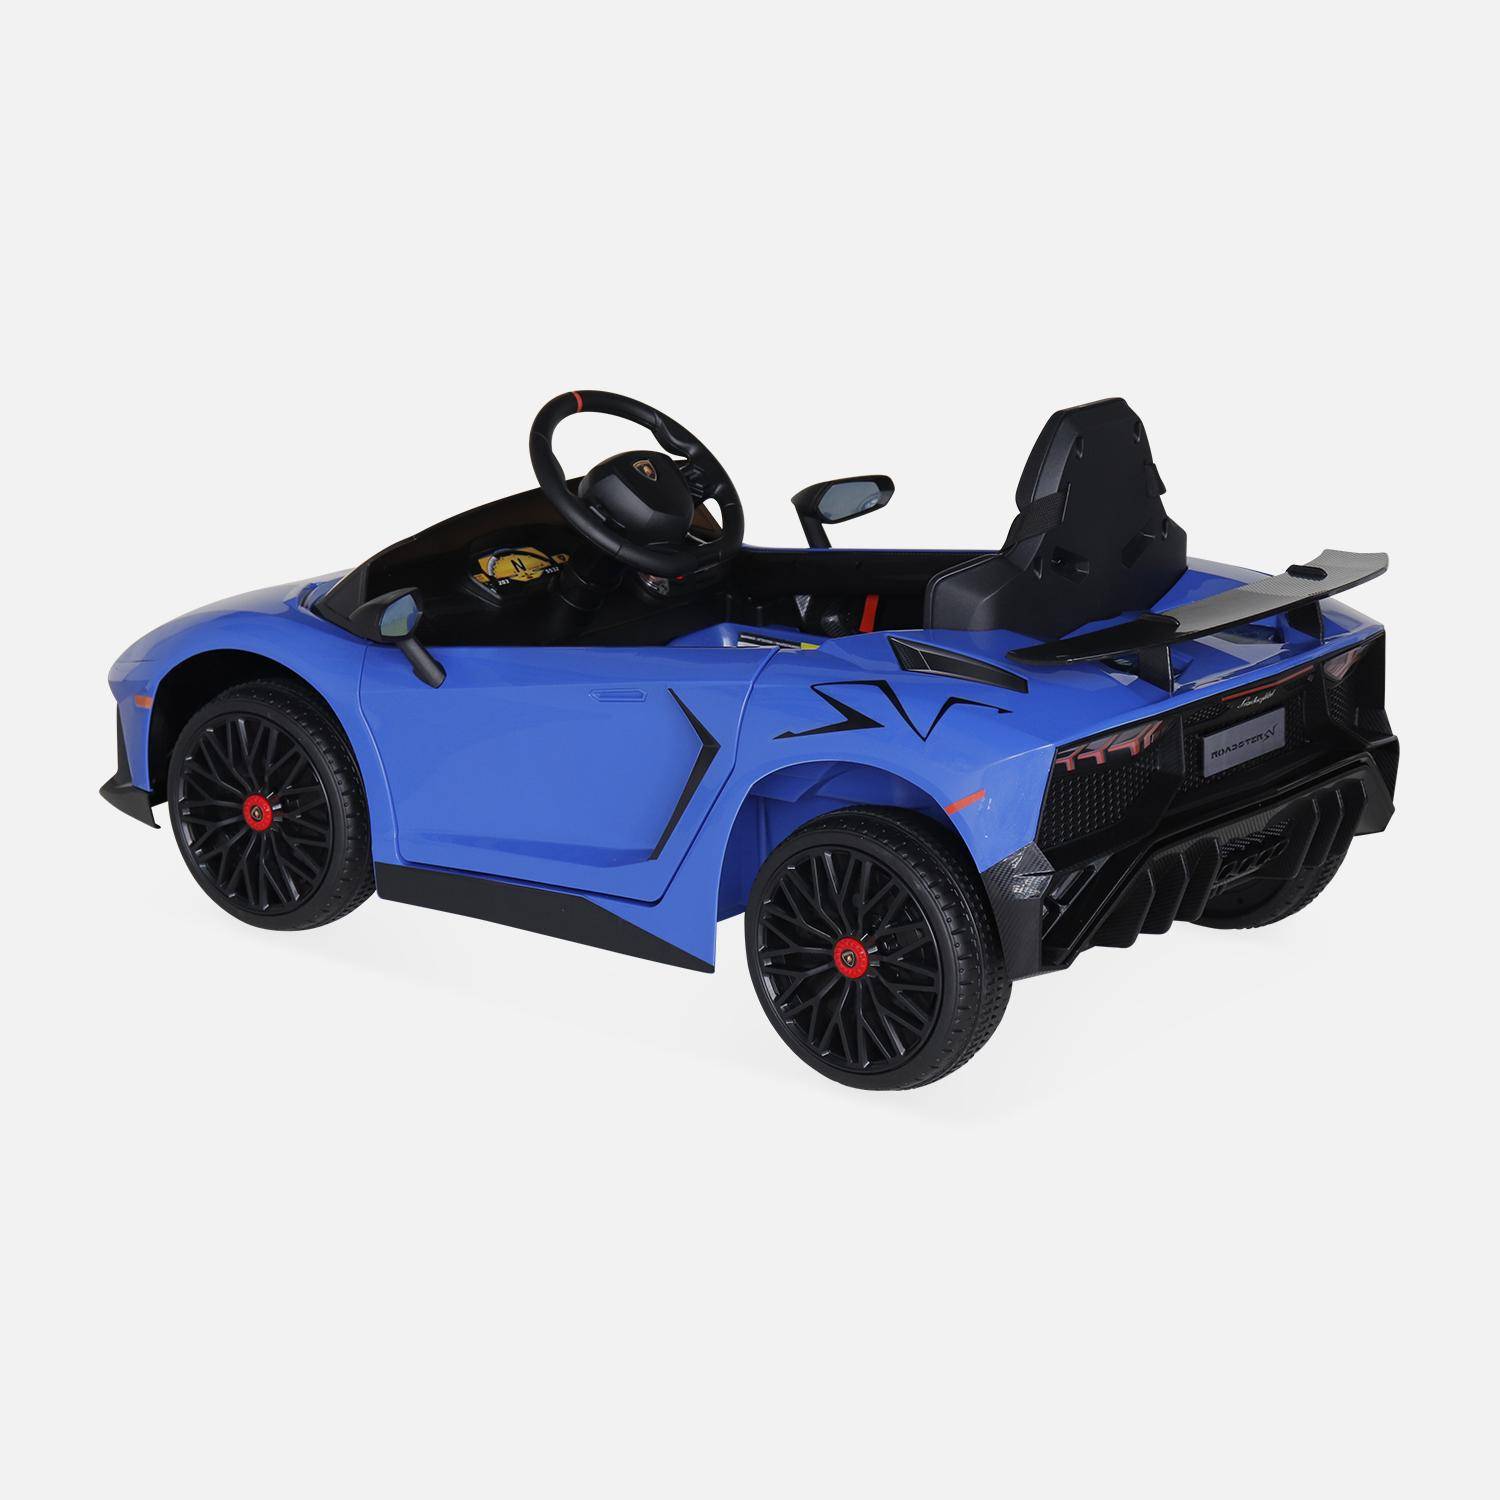 12V elektrische Lamborghini kinderauto, blauw, 1 zitplaats, met radio, afstandsbediening, MP3, USB-poort en functionele koplampen Photo4